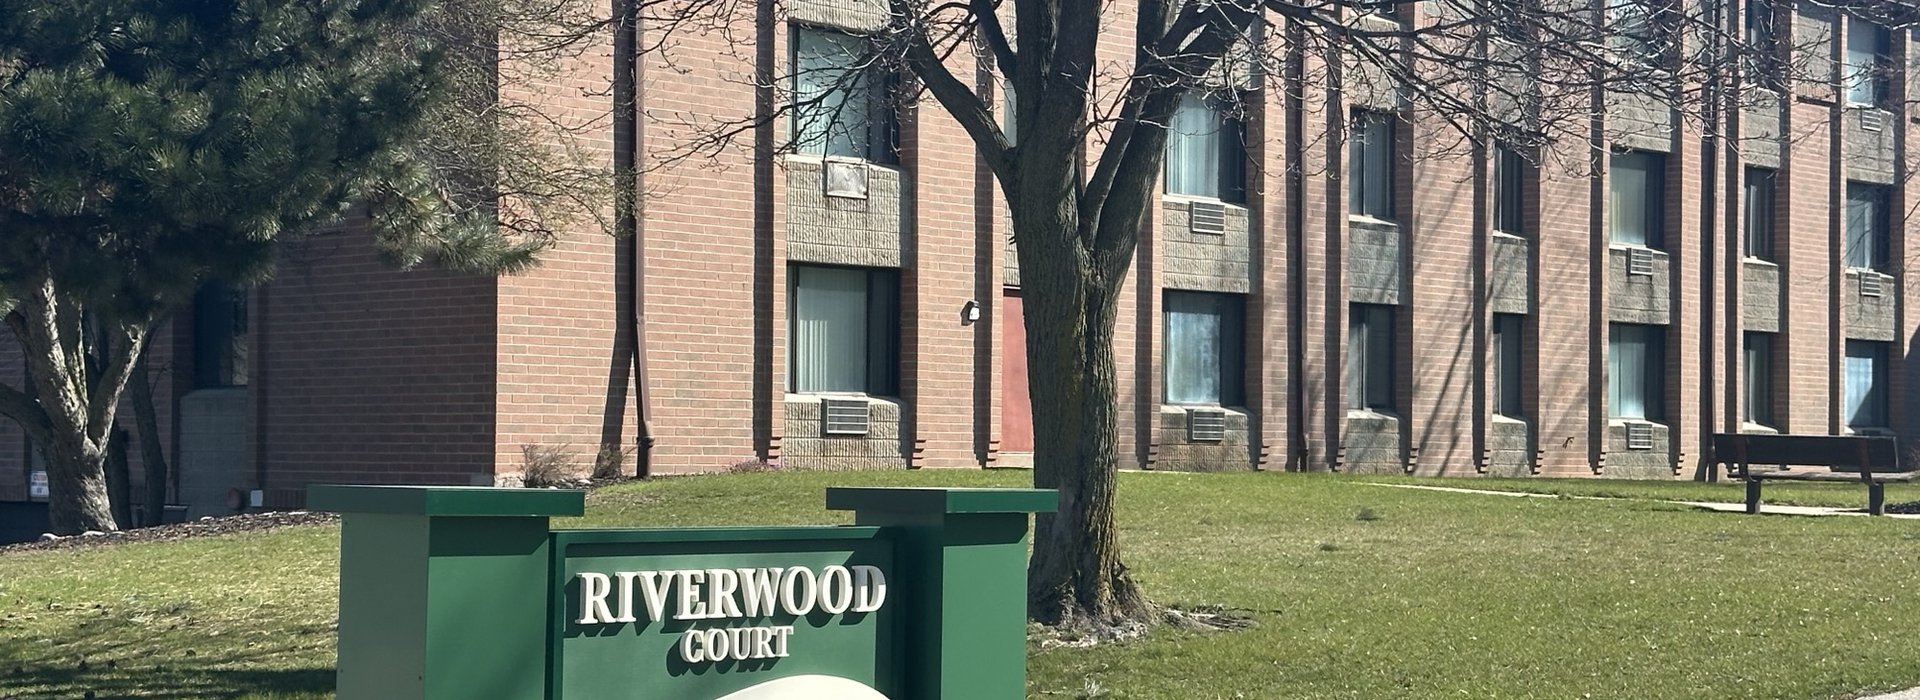 Riverwood Court signage